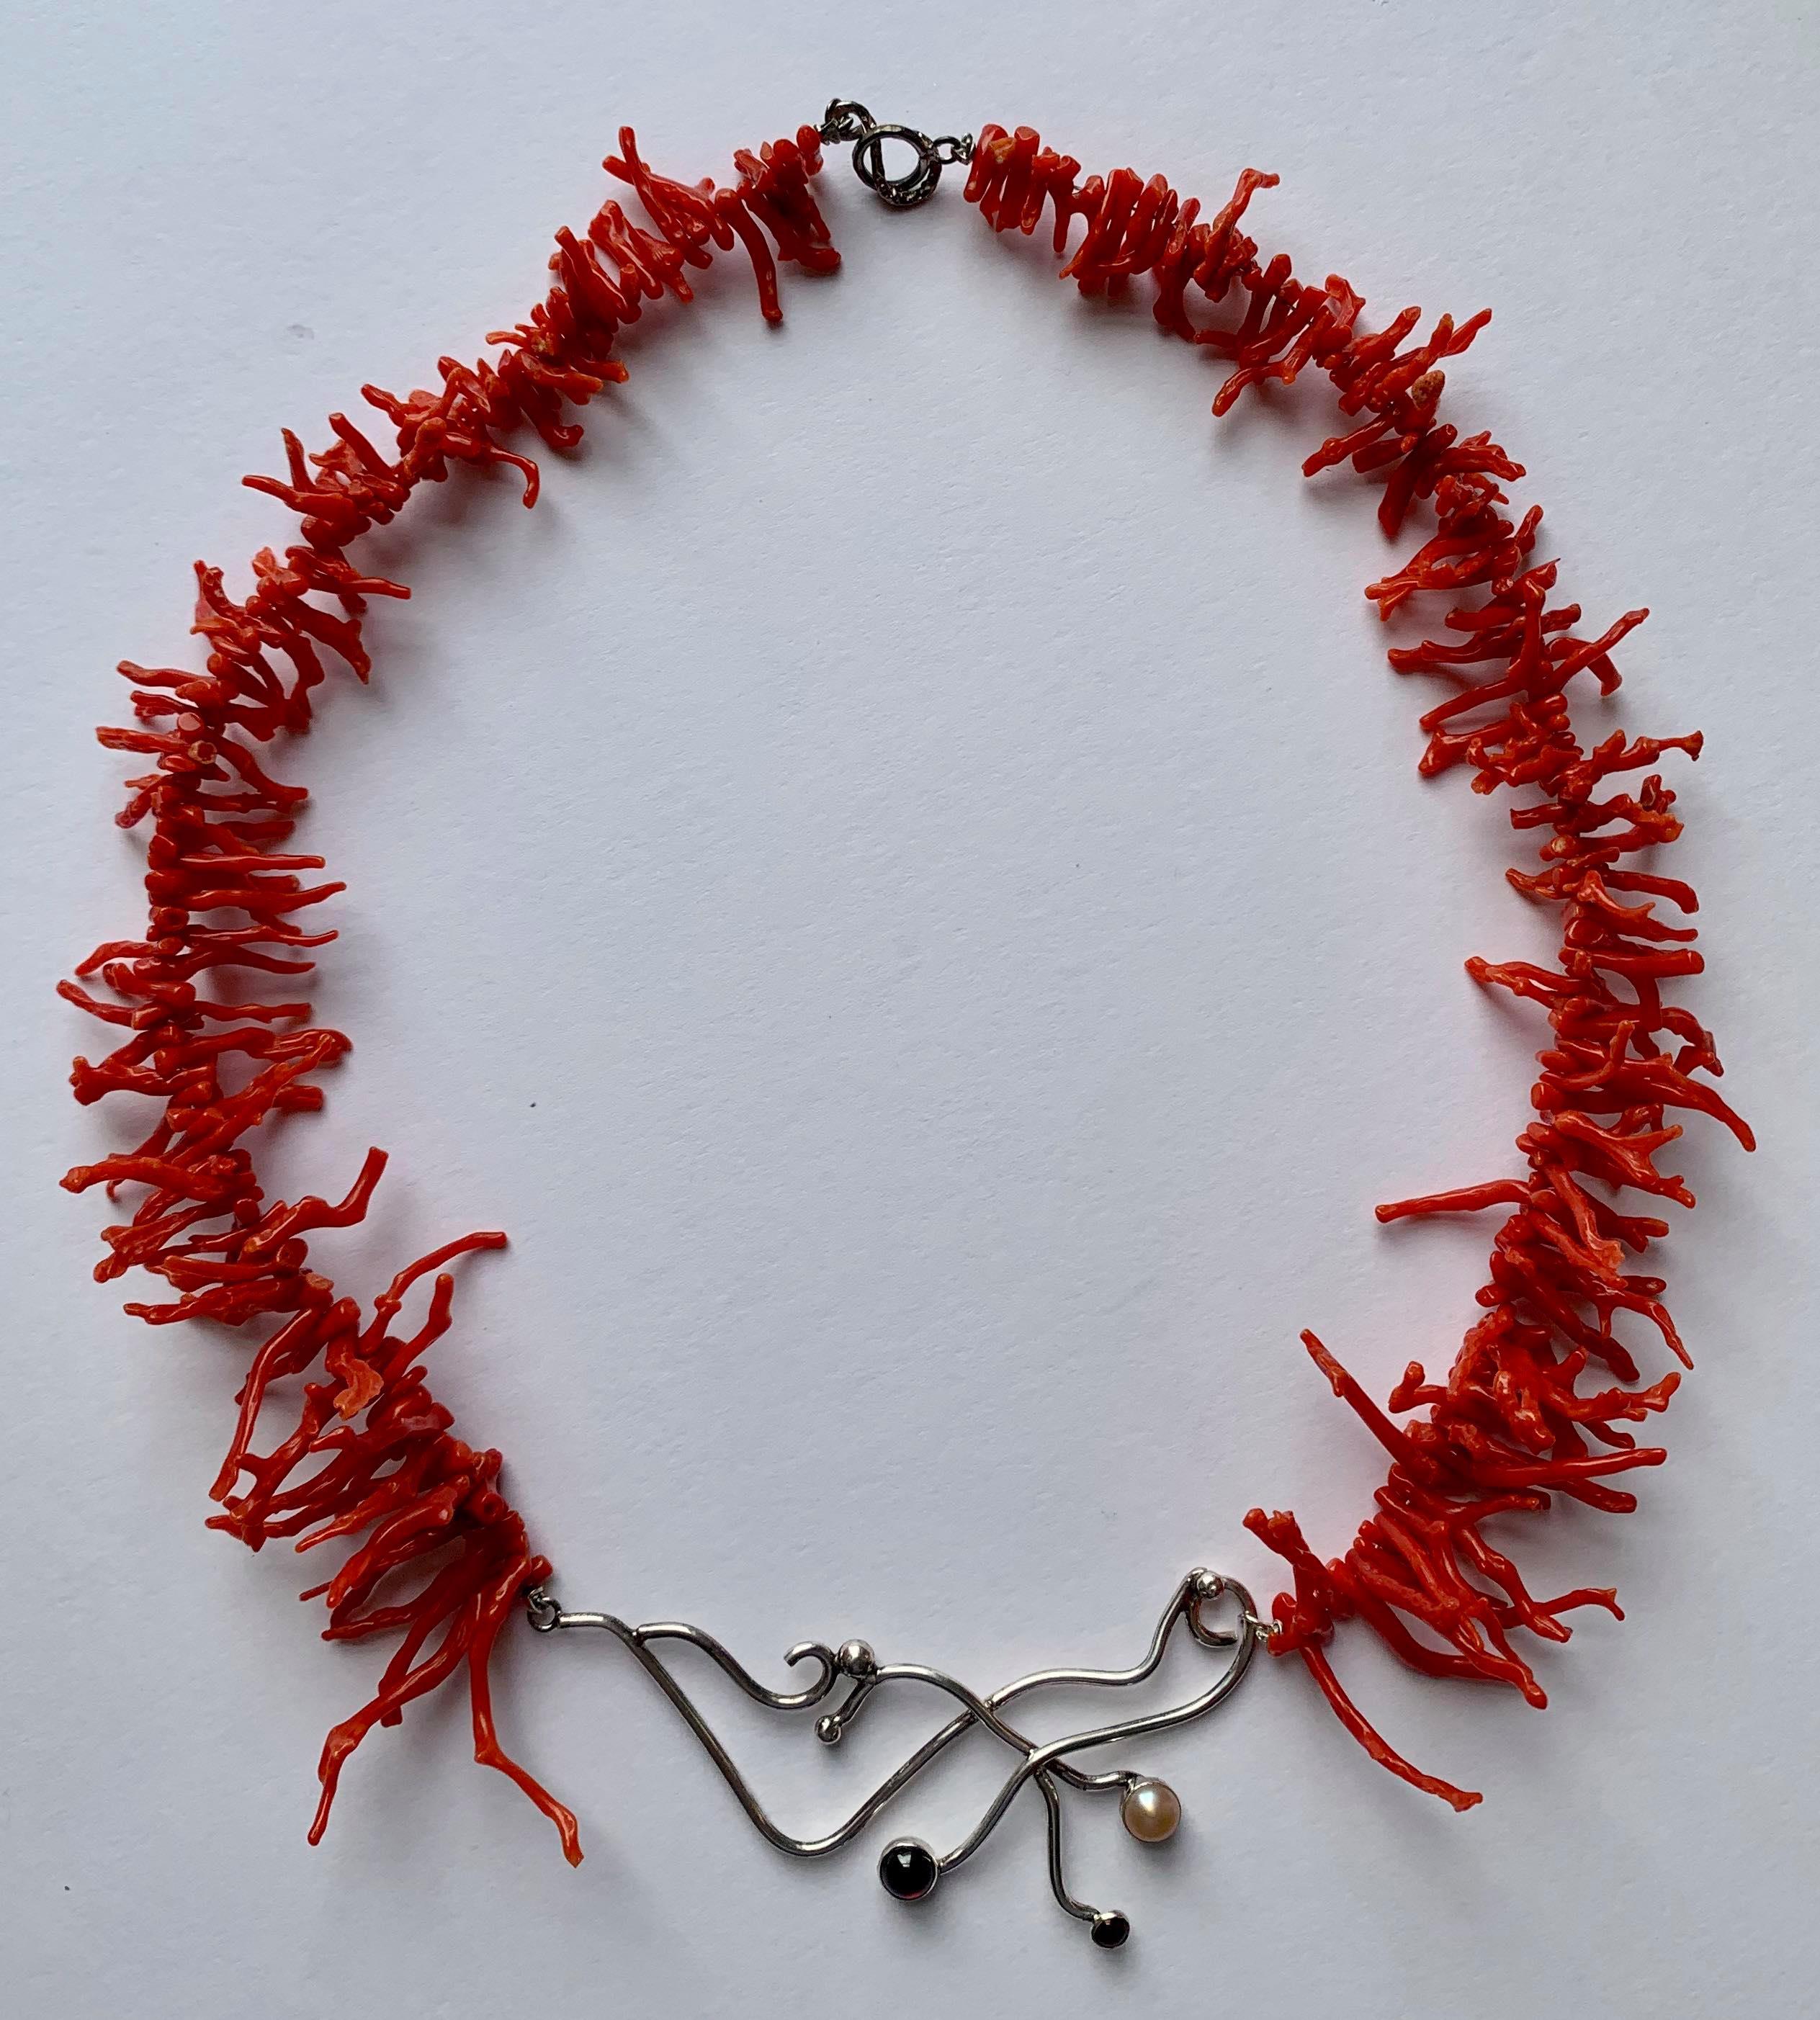 Schmuck- Handgefertigte Korallen-Halskette – Mixed Media Art von Mary Wheeler